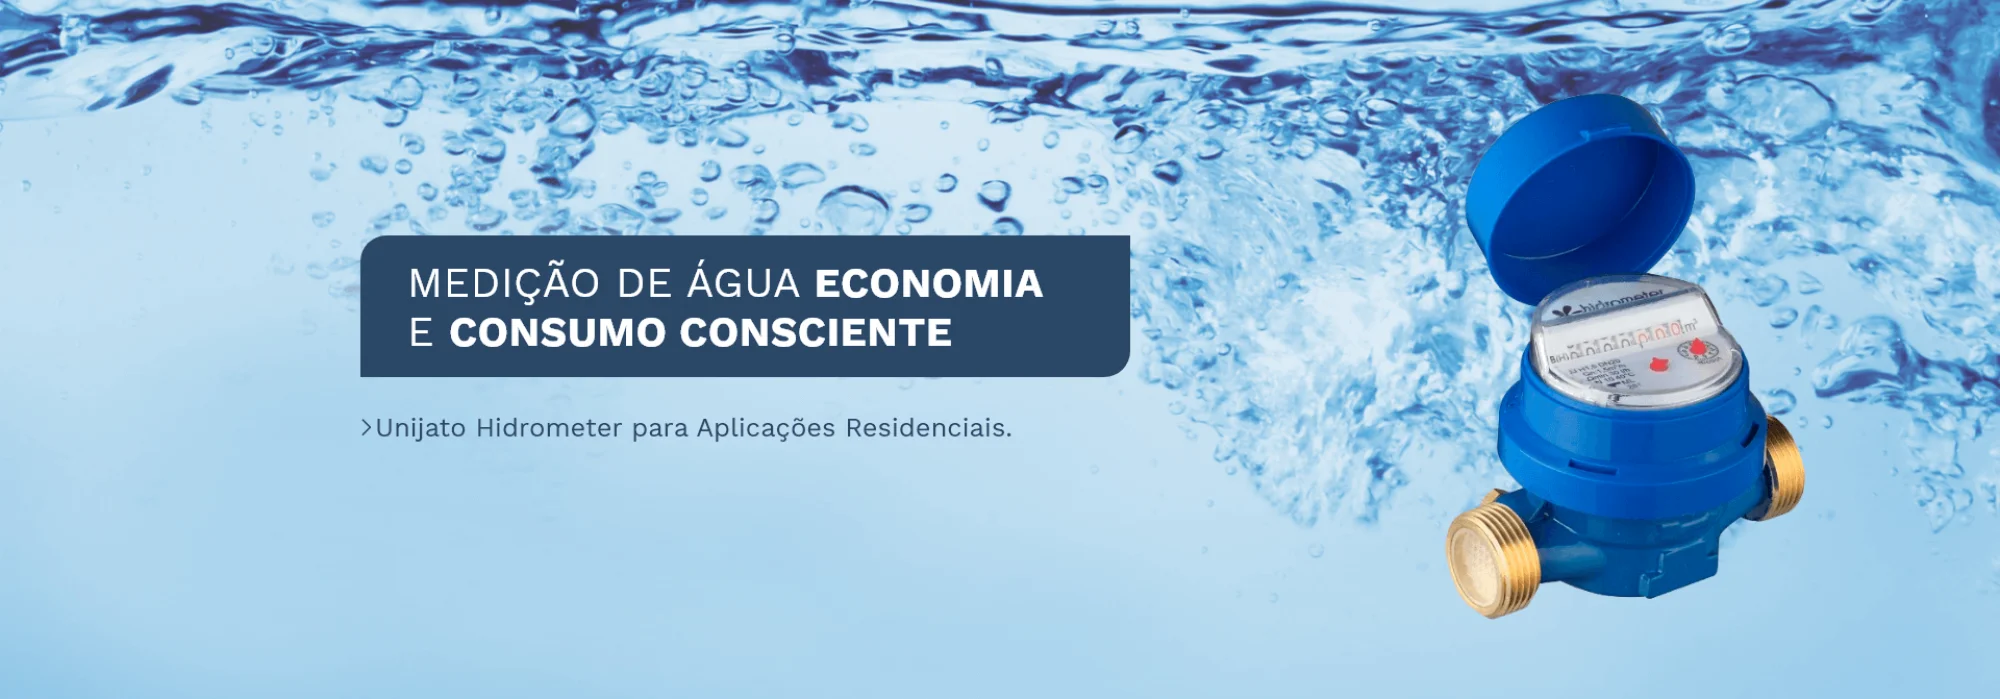 Medição de Água Economia e Consumo Consciente